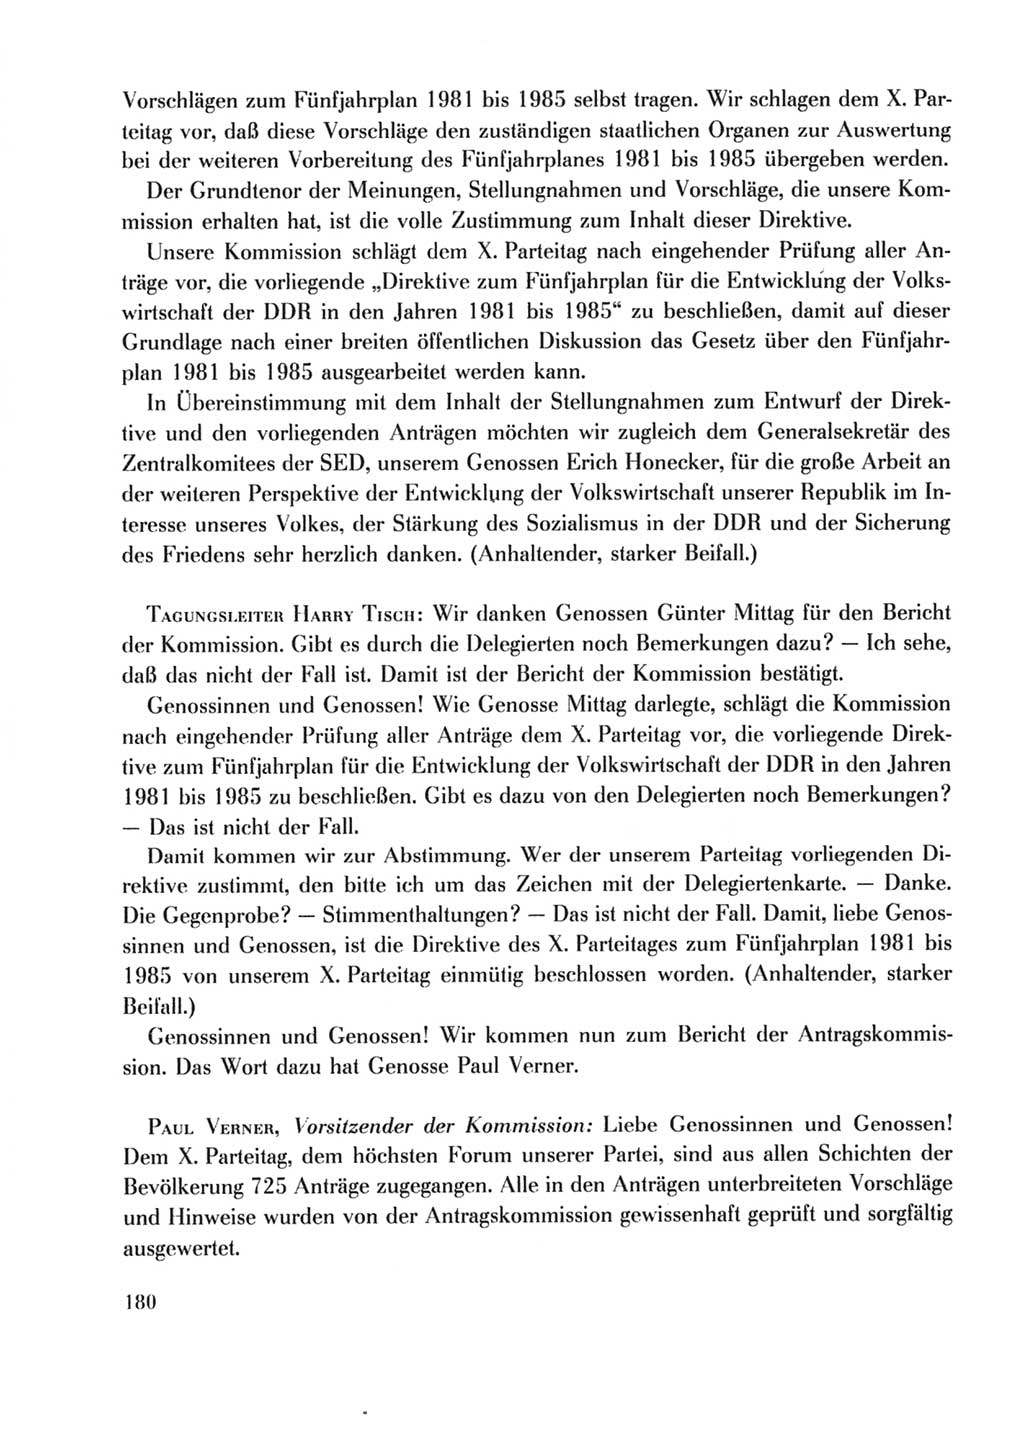 Protokoll der Verhandlungen des Ⅹ. Parteitages der Sozialistischen Einheitspartei Deutschlands (SED) [Deutsche Demokratische Republik (DDR)] 1981, Band 2, Seite 180 (Prot. Verh. Ⅹ. PT SED DDR 1981, Bd. 2, S. 180)